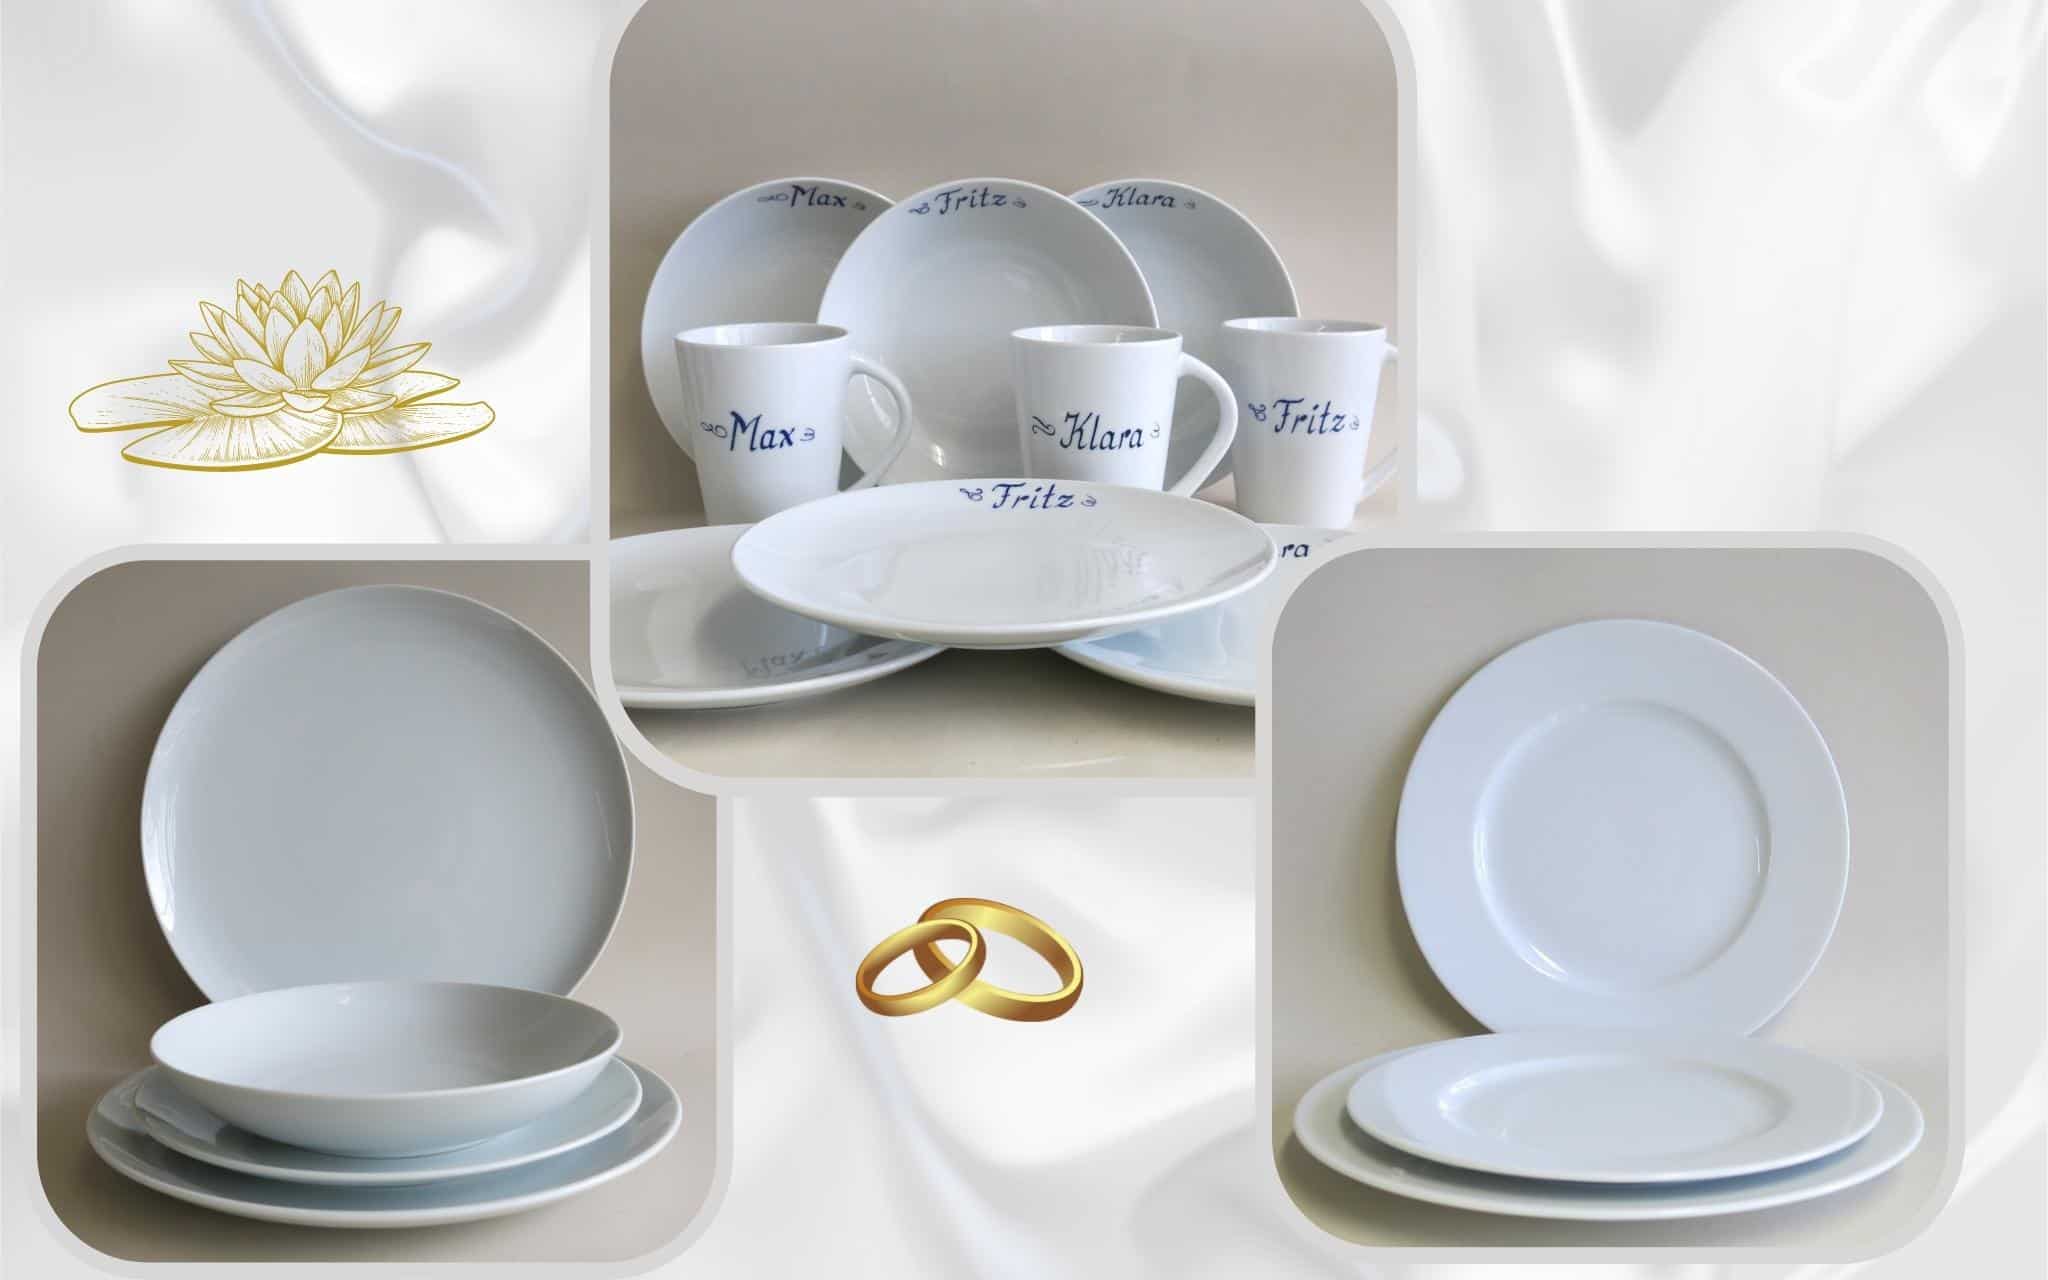 Geschenkideen für den Hochzeitstisch Einleitung Weiße Porzellan Teller Opty und Ole, Frühstücksgeschirr mit Namen